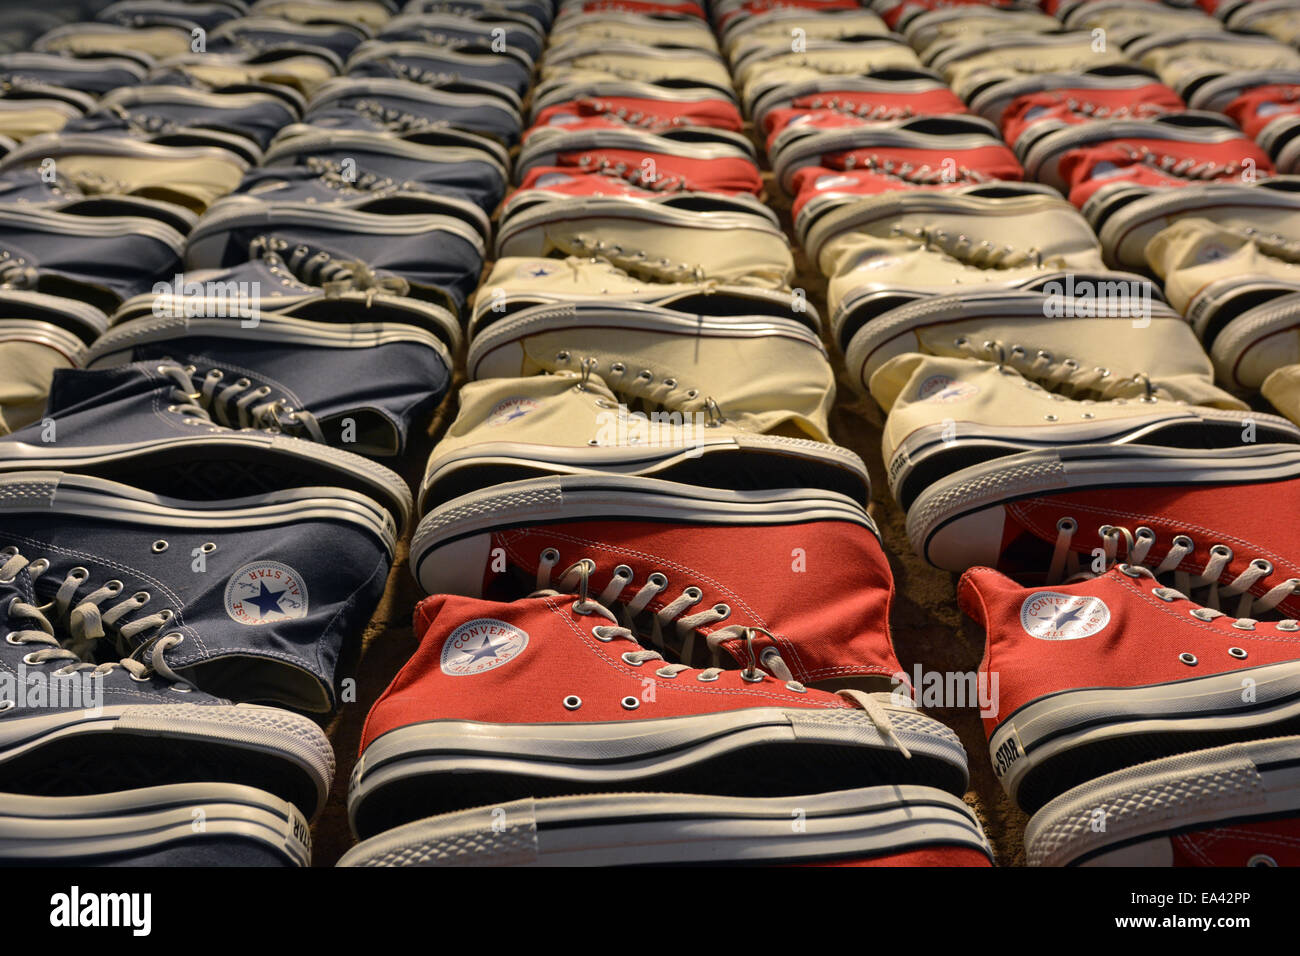 Red and white converse sneakers Banque de photographies et d'images à haute  résolution - Alamy